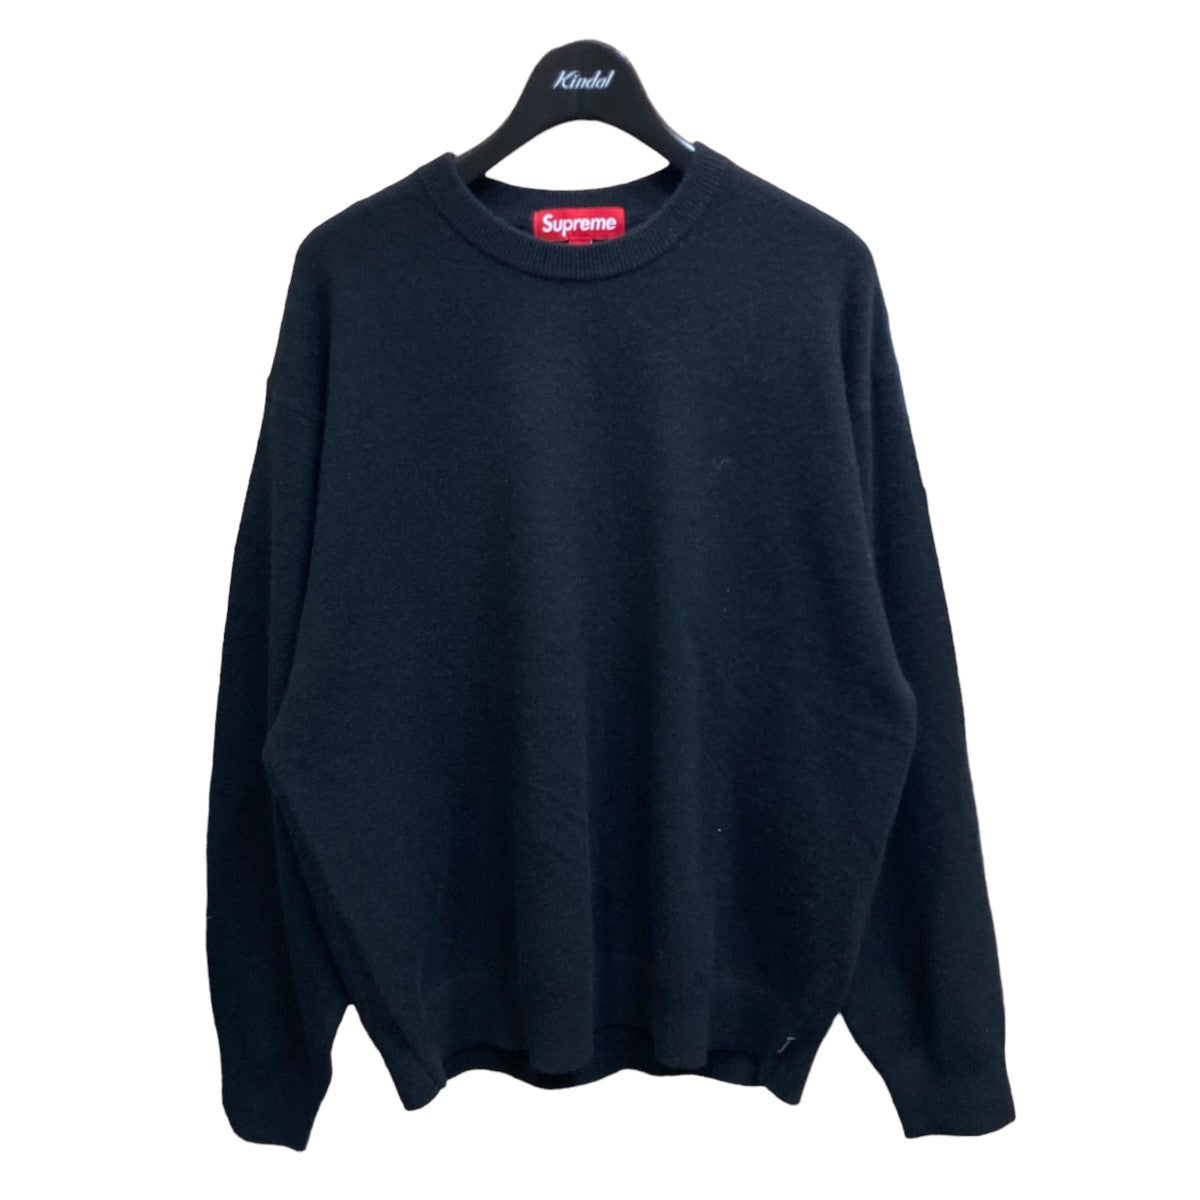 独特な 【送料無料】 sweater supreme Sサイズ ニット knit ニット ...